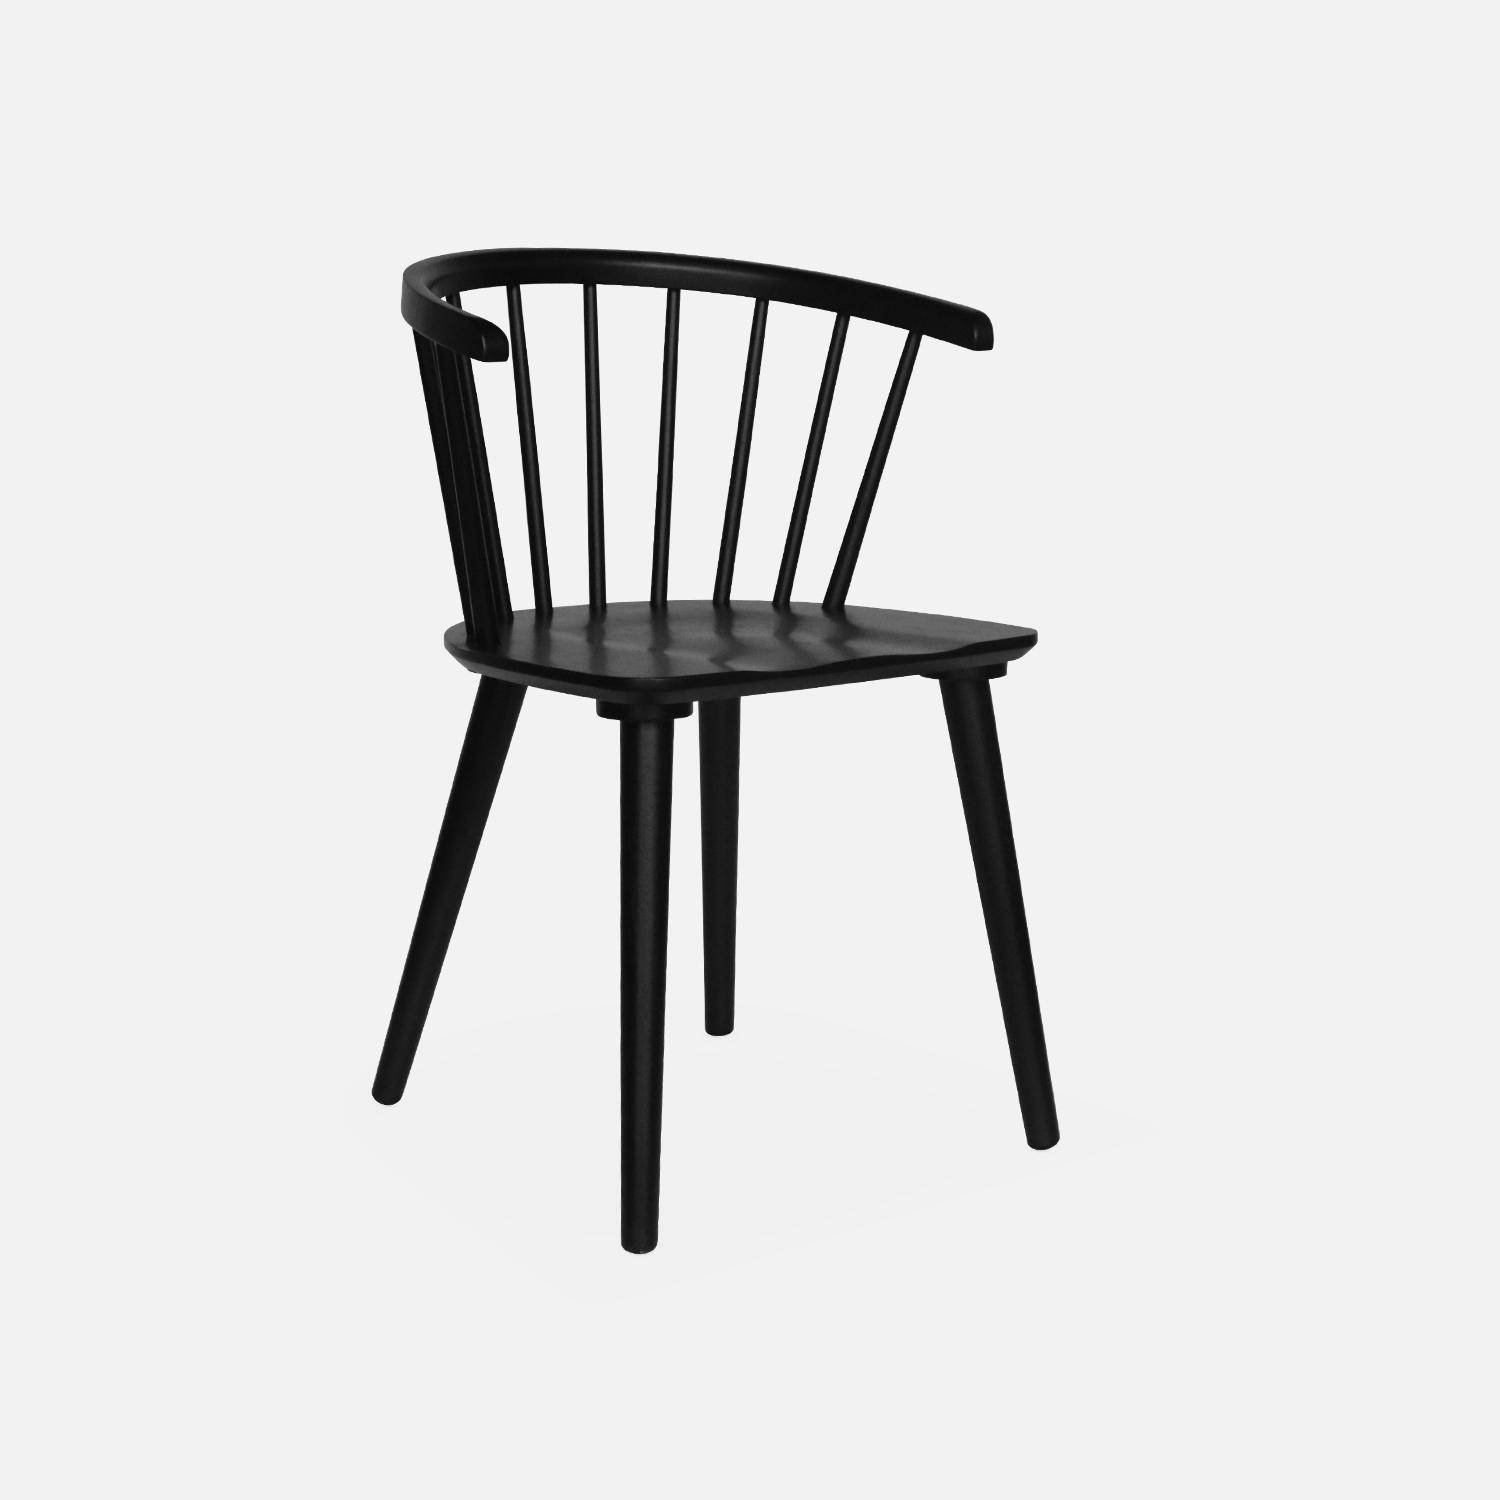 Juego de 2 sillas de bar de madera y contrachapado negro, Paula, An 51 x Pr 53 x Al 75cm,sweeek,Photo4